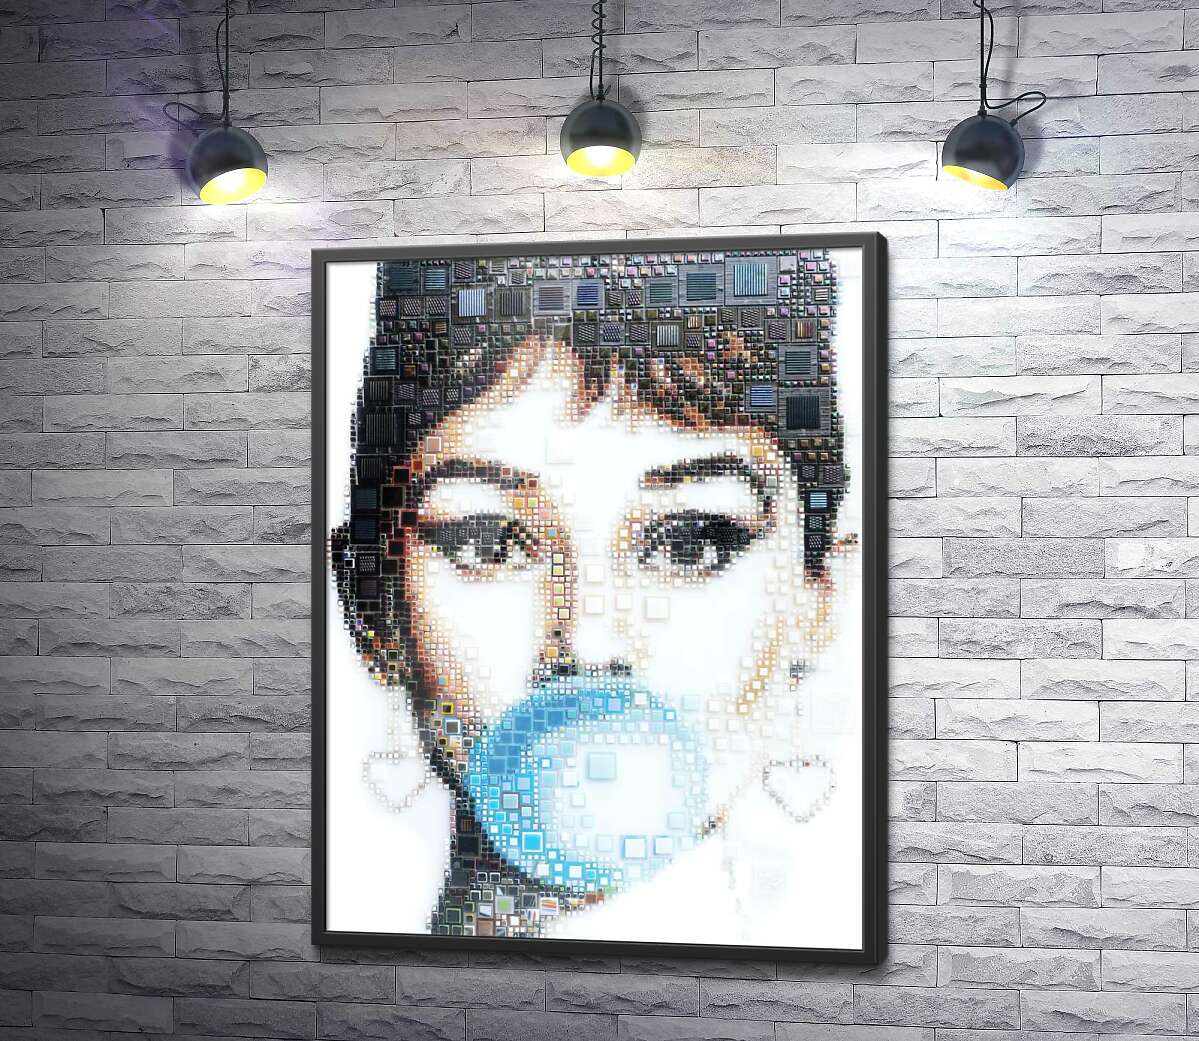 постер Актриса Одри Хепбёрн (Audrey Hepburn) с жвачкой